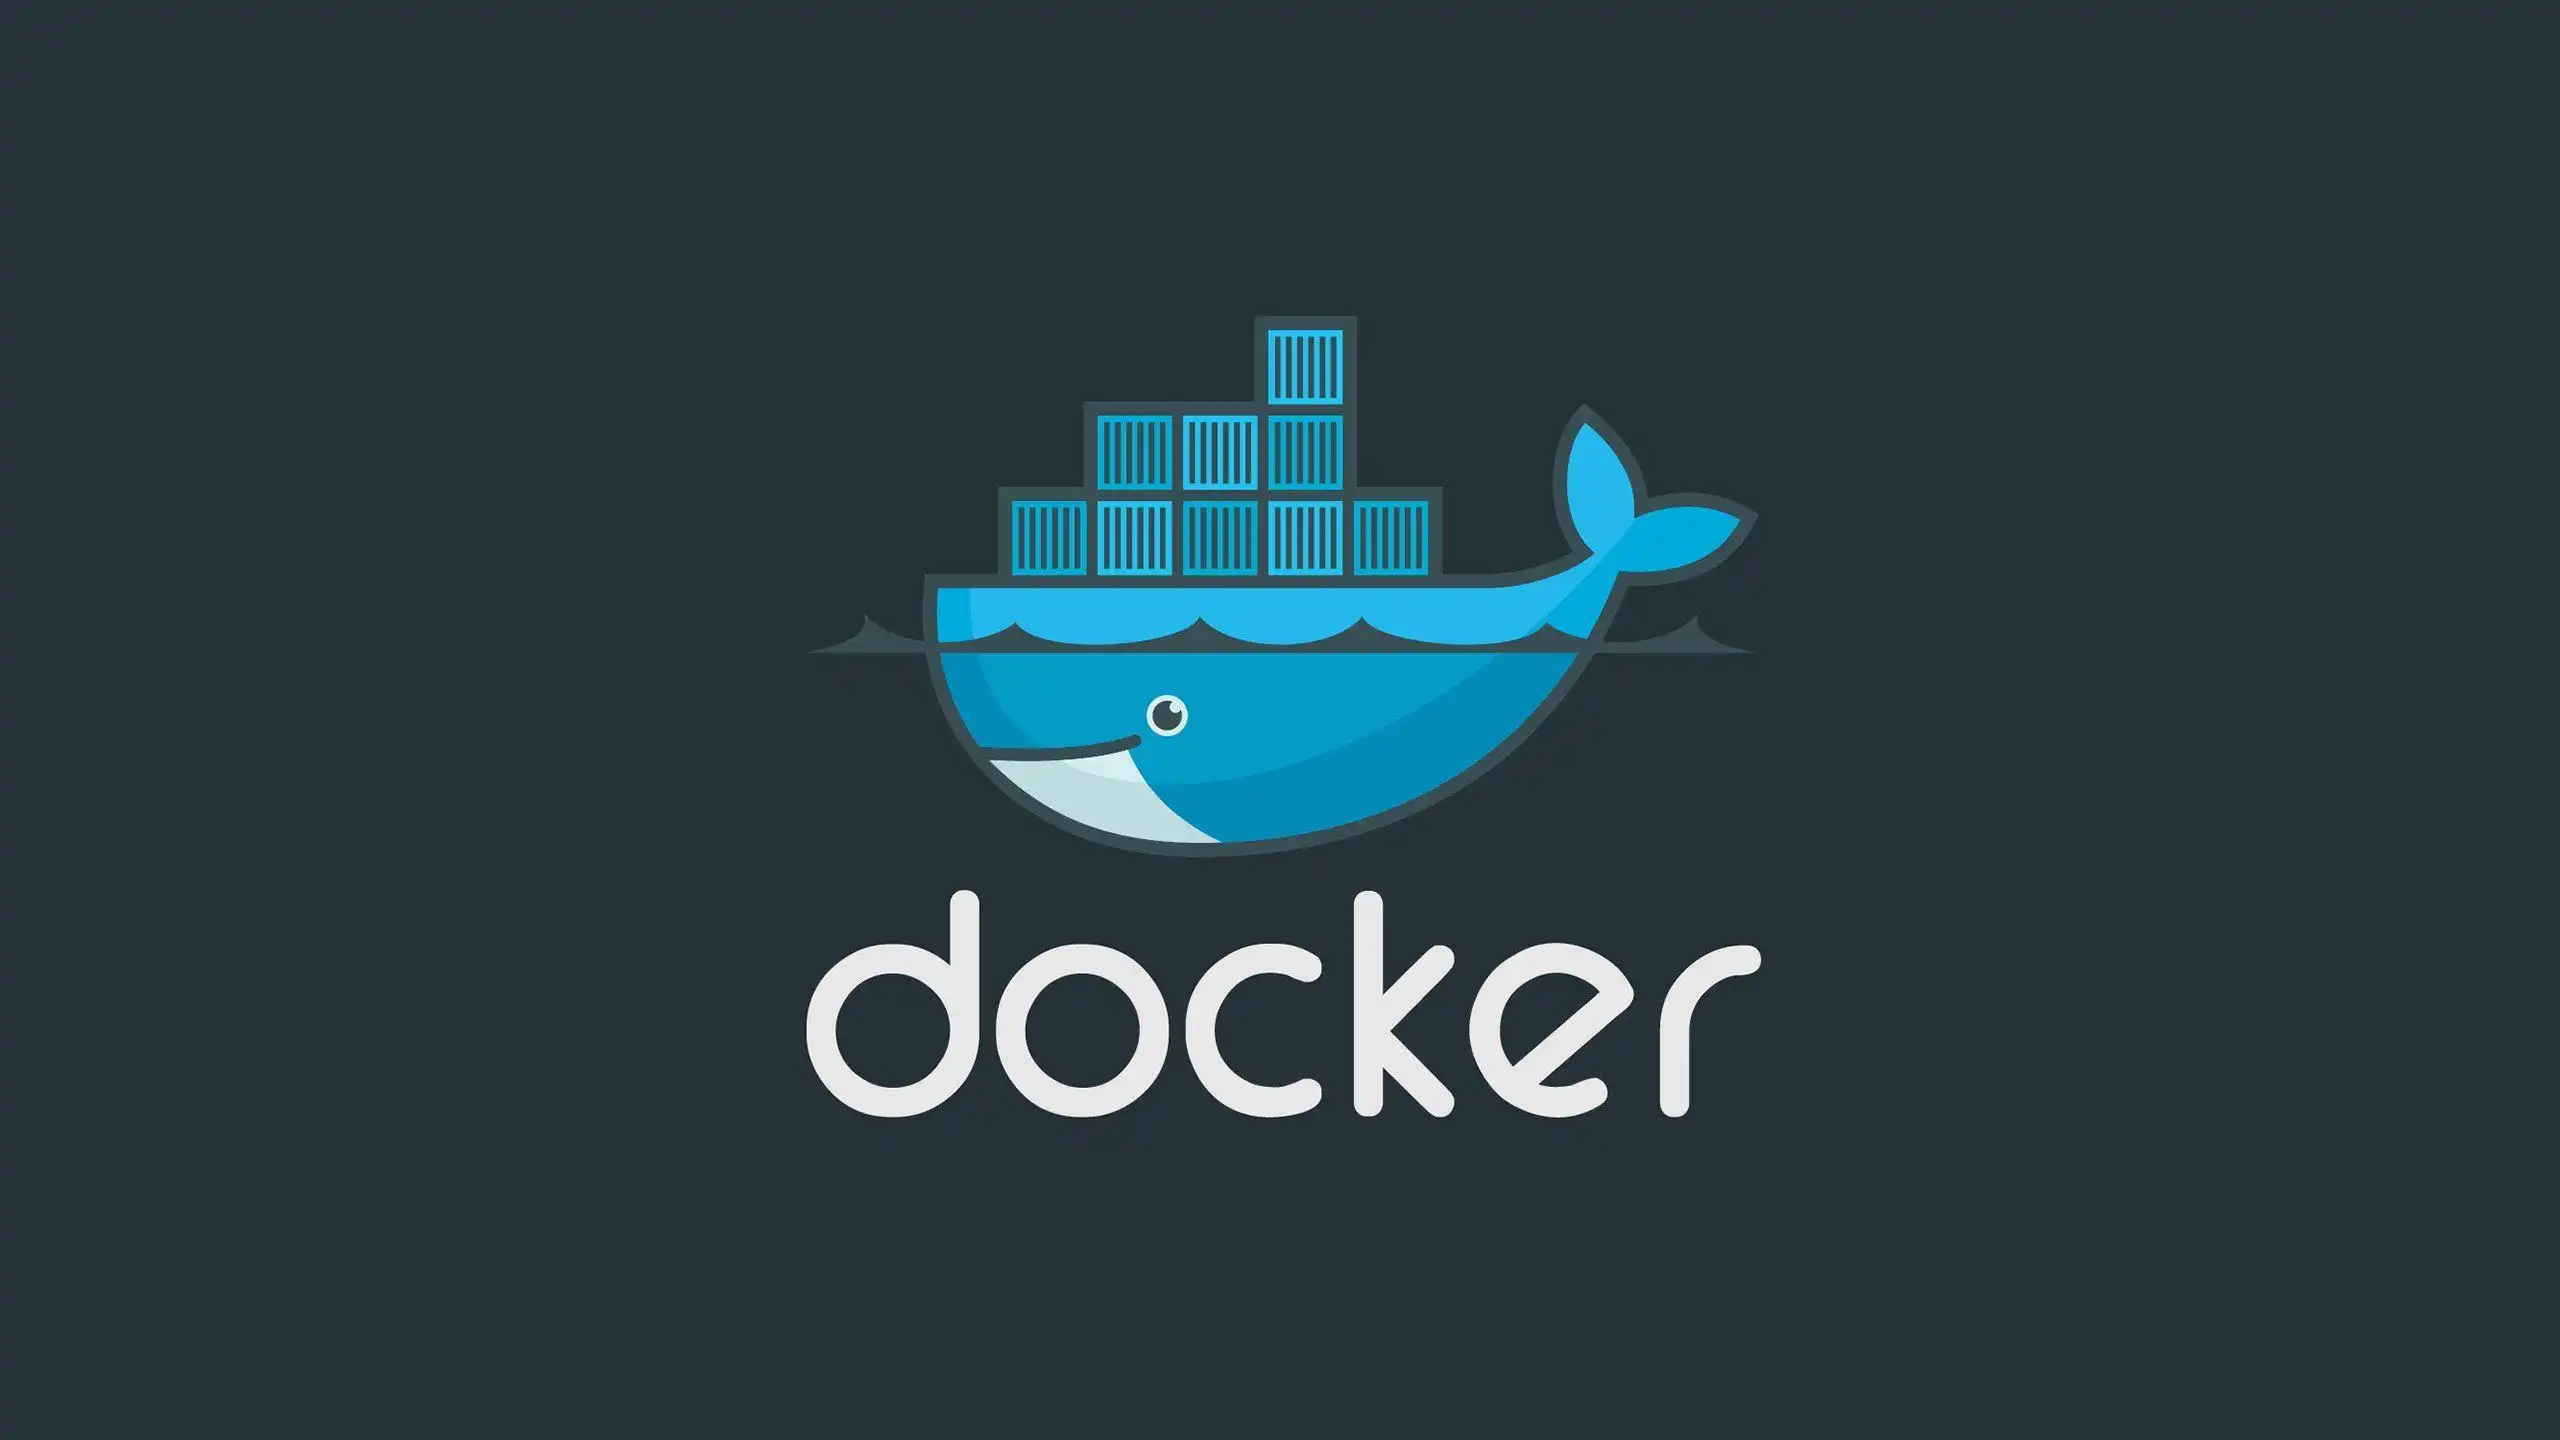 داکر( Docker)چیست ؟